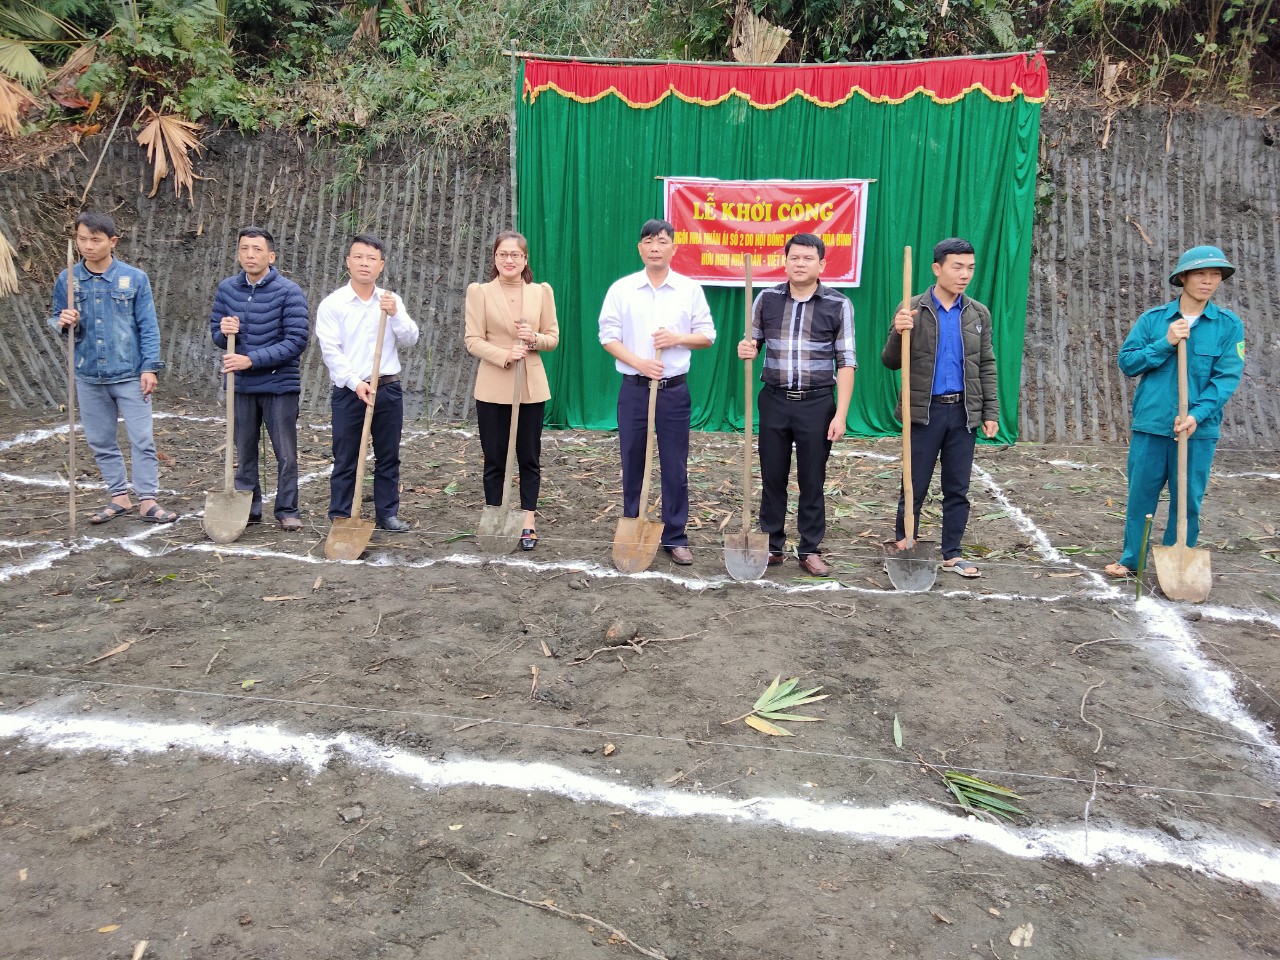 UBND xã Việt Vinh tổ chức lễ Khởi công xây dựng nhà nhân ái cho hộ nghèo.